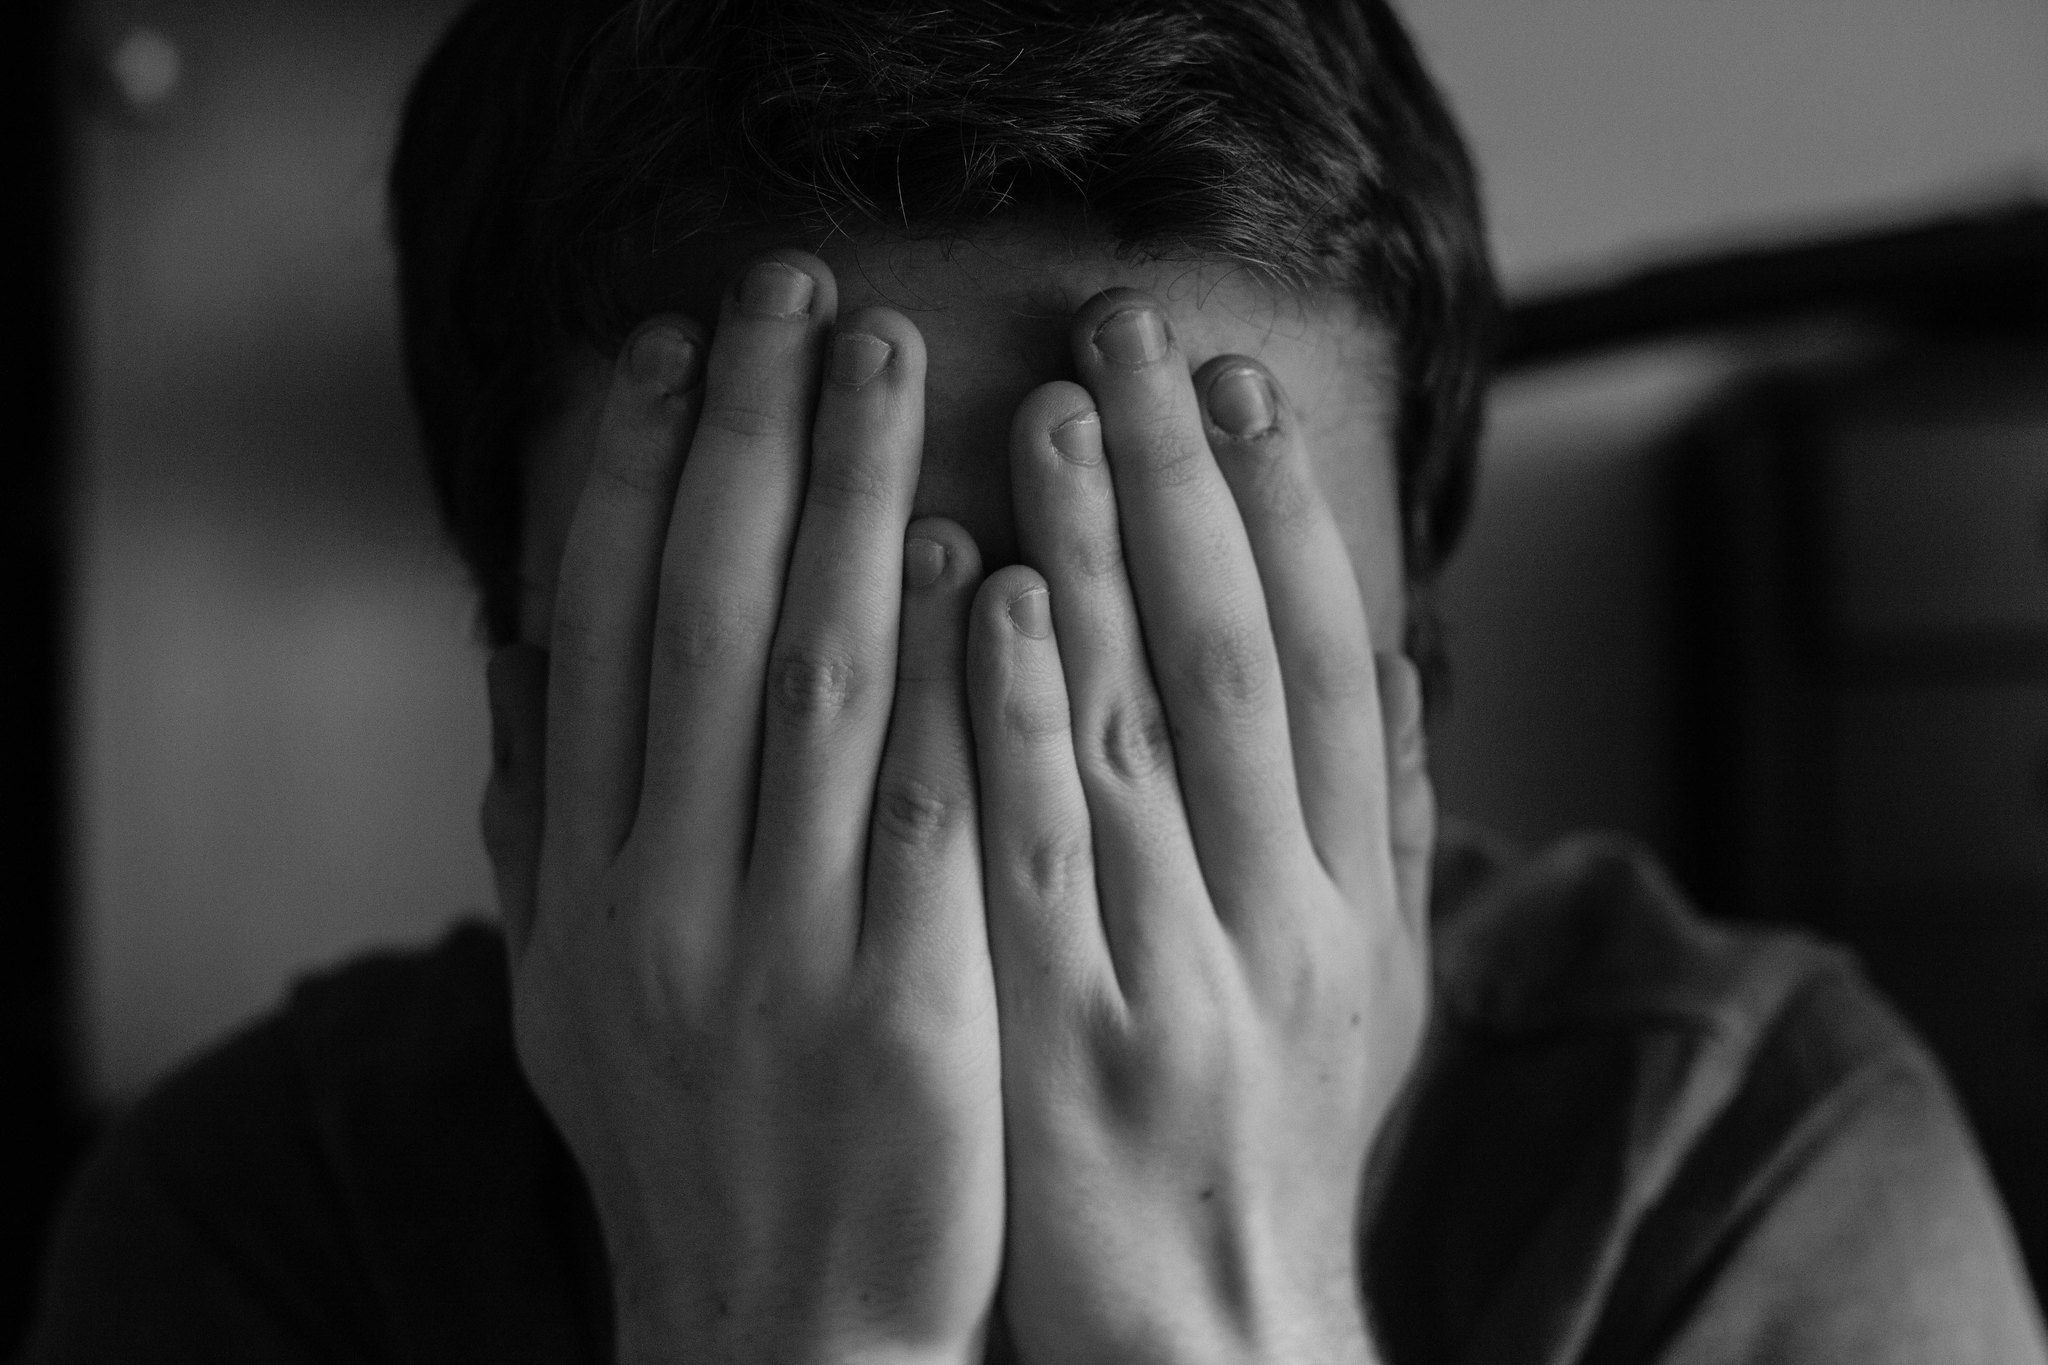 กรมสุขภาพจิต เผยคนไทยเครียดมีปัญหาสุขภาพจิตเพิ่ม-ซึมเศร้าเพิ่ม 1-2%